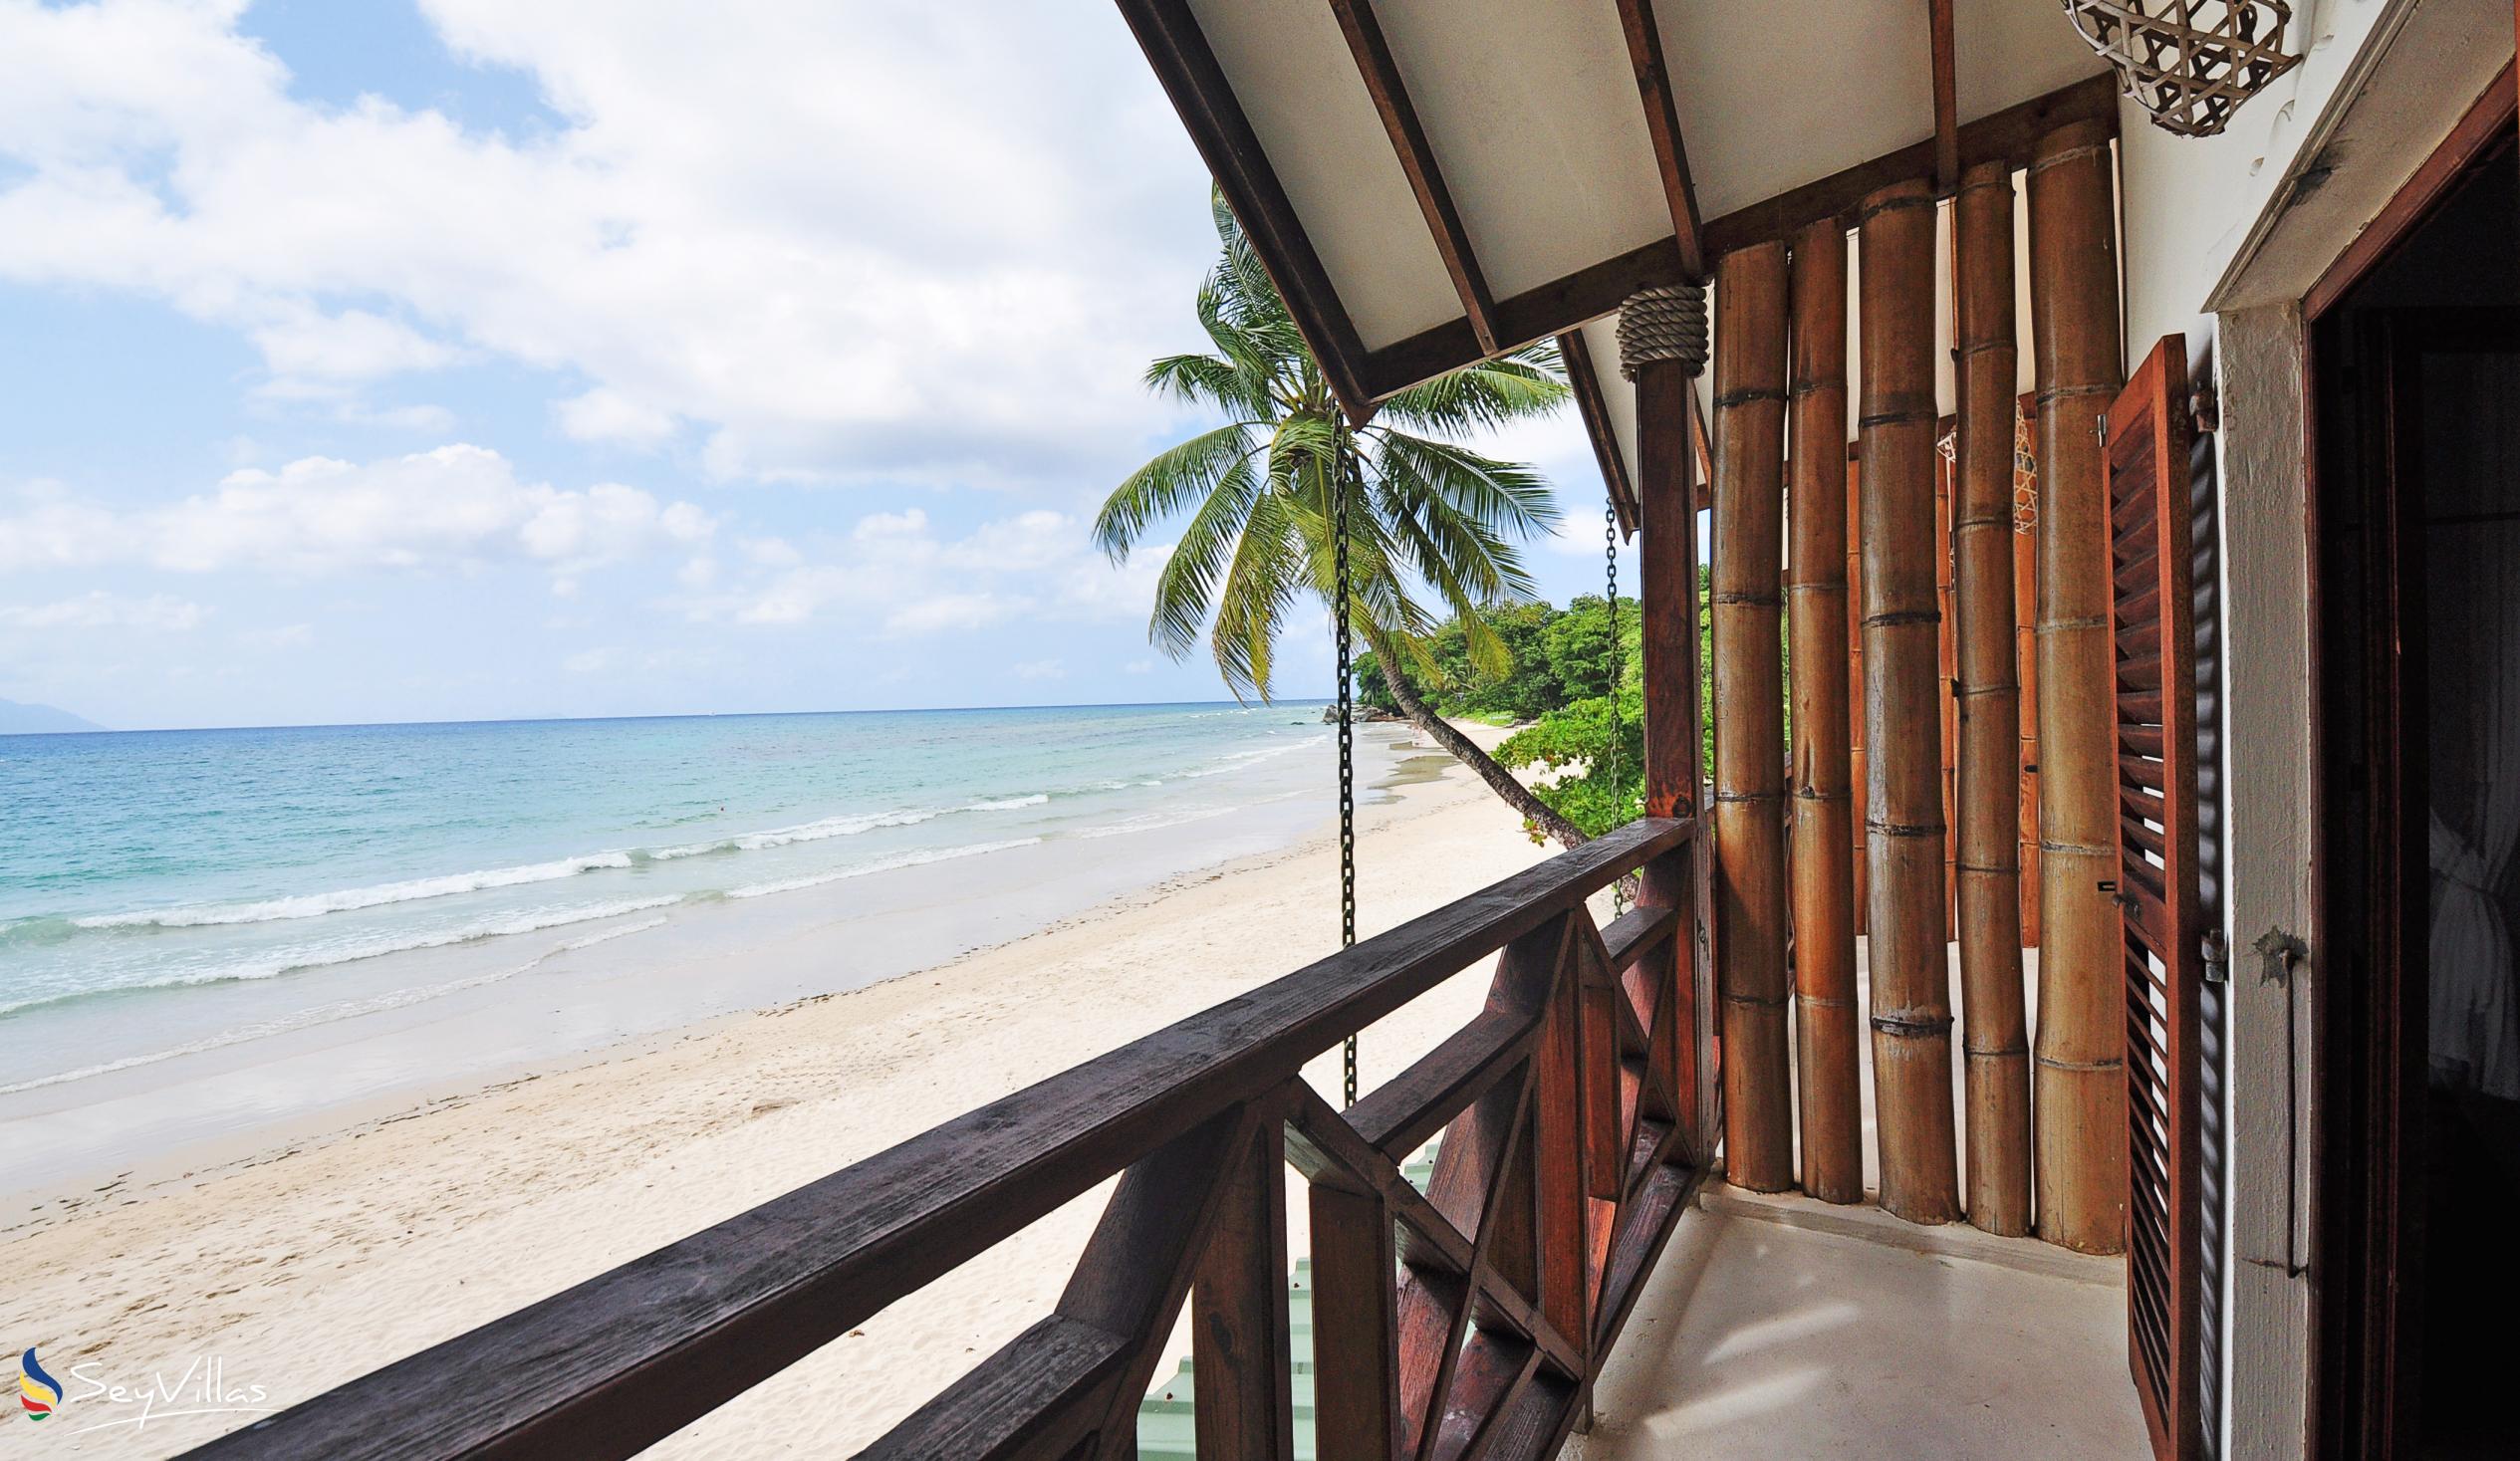 Foto 14: Clef des Iles - Duplex deux chambres sur la plage - Mahé (Seychelles)